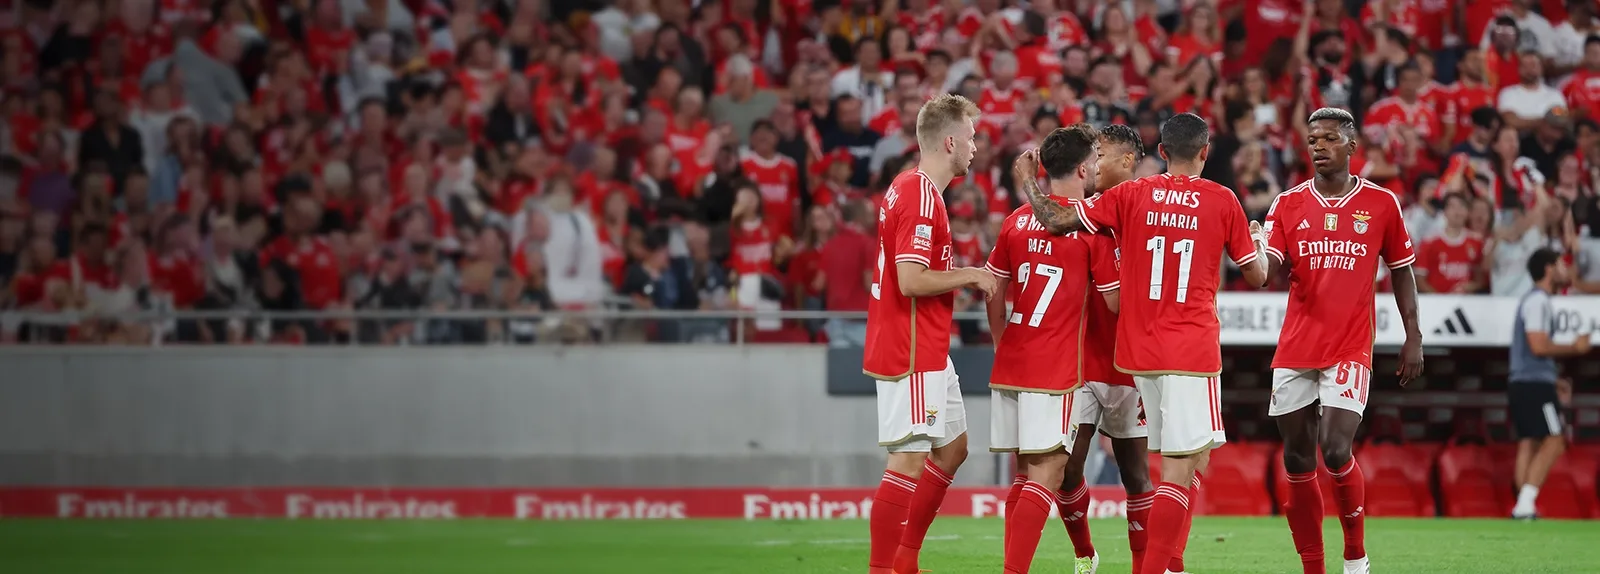 VÍDEO: o triplo do meio-campo do Benfica no 'buzzer beater' - TVI